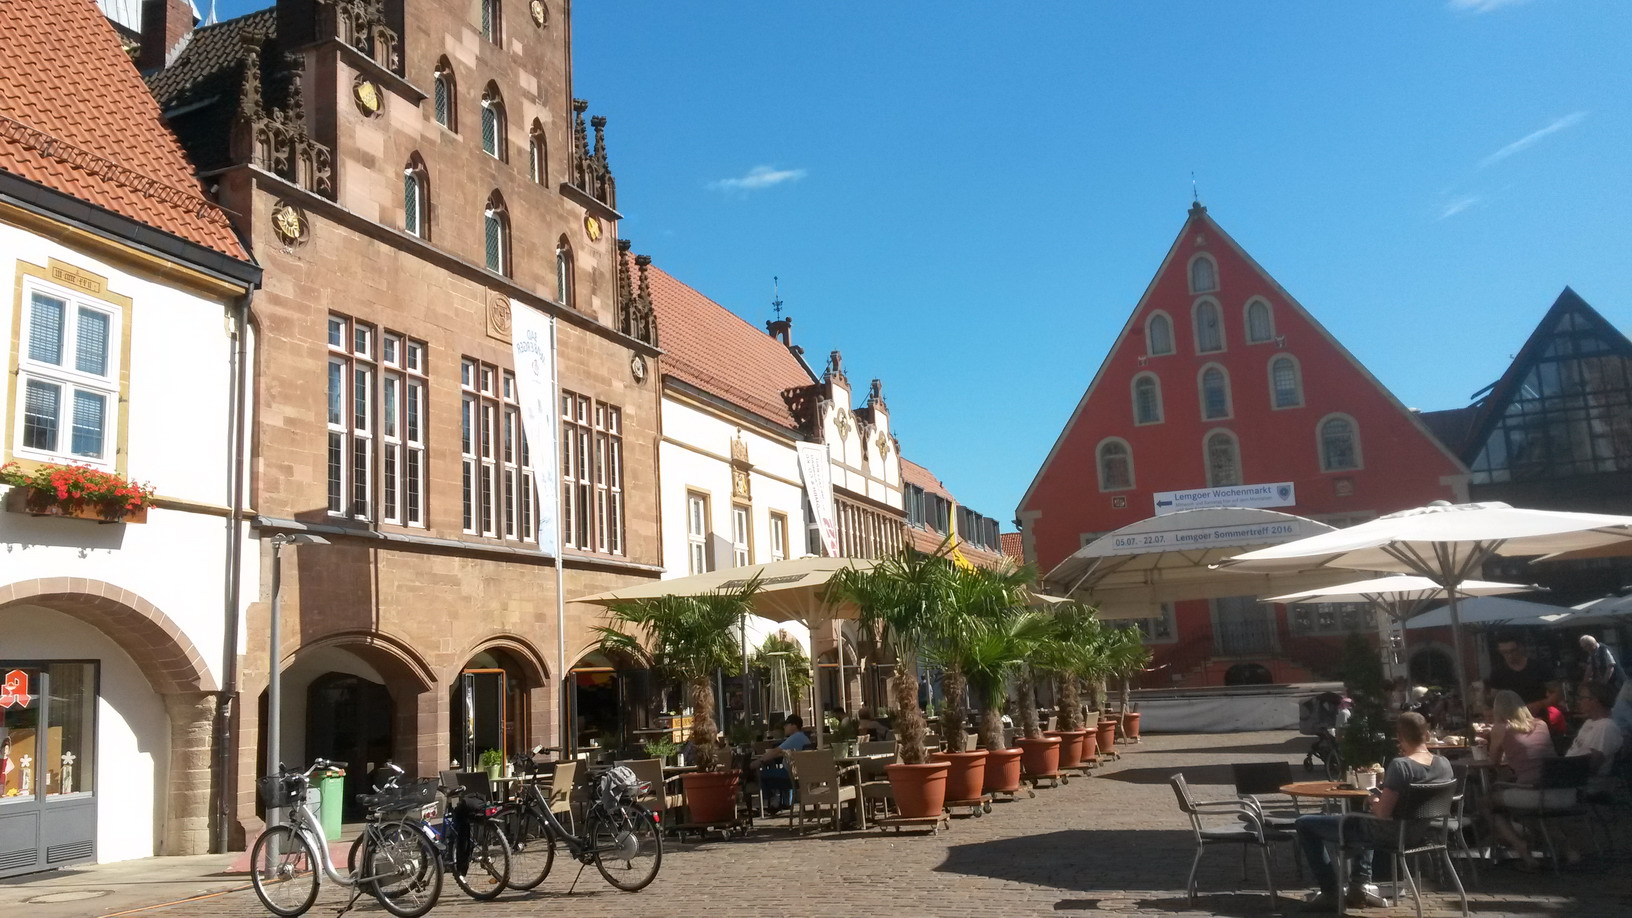 Der Marktplatz ist einer der schönsten Stadtplätze Norddeutschlands.